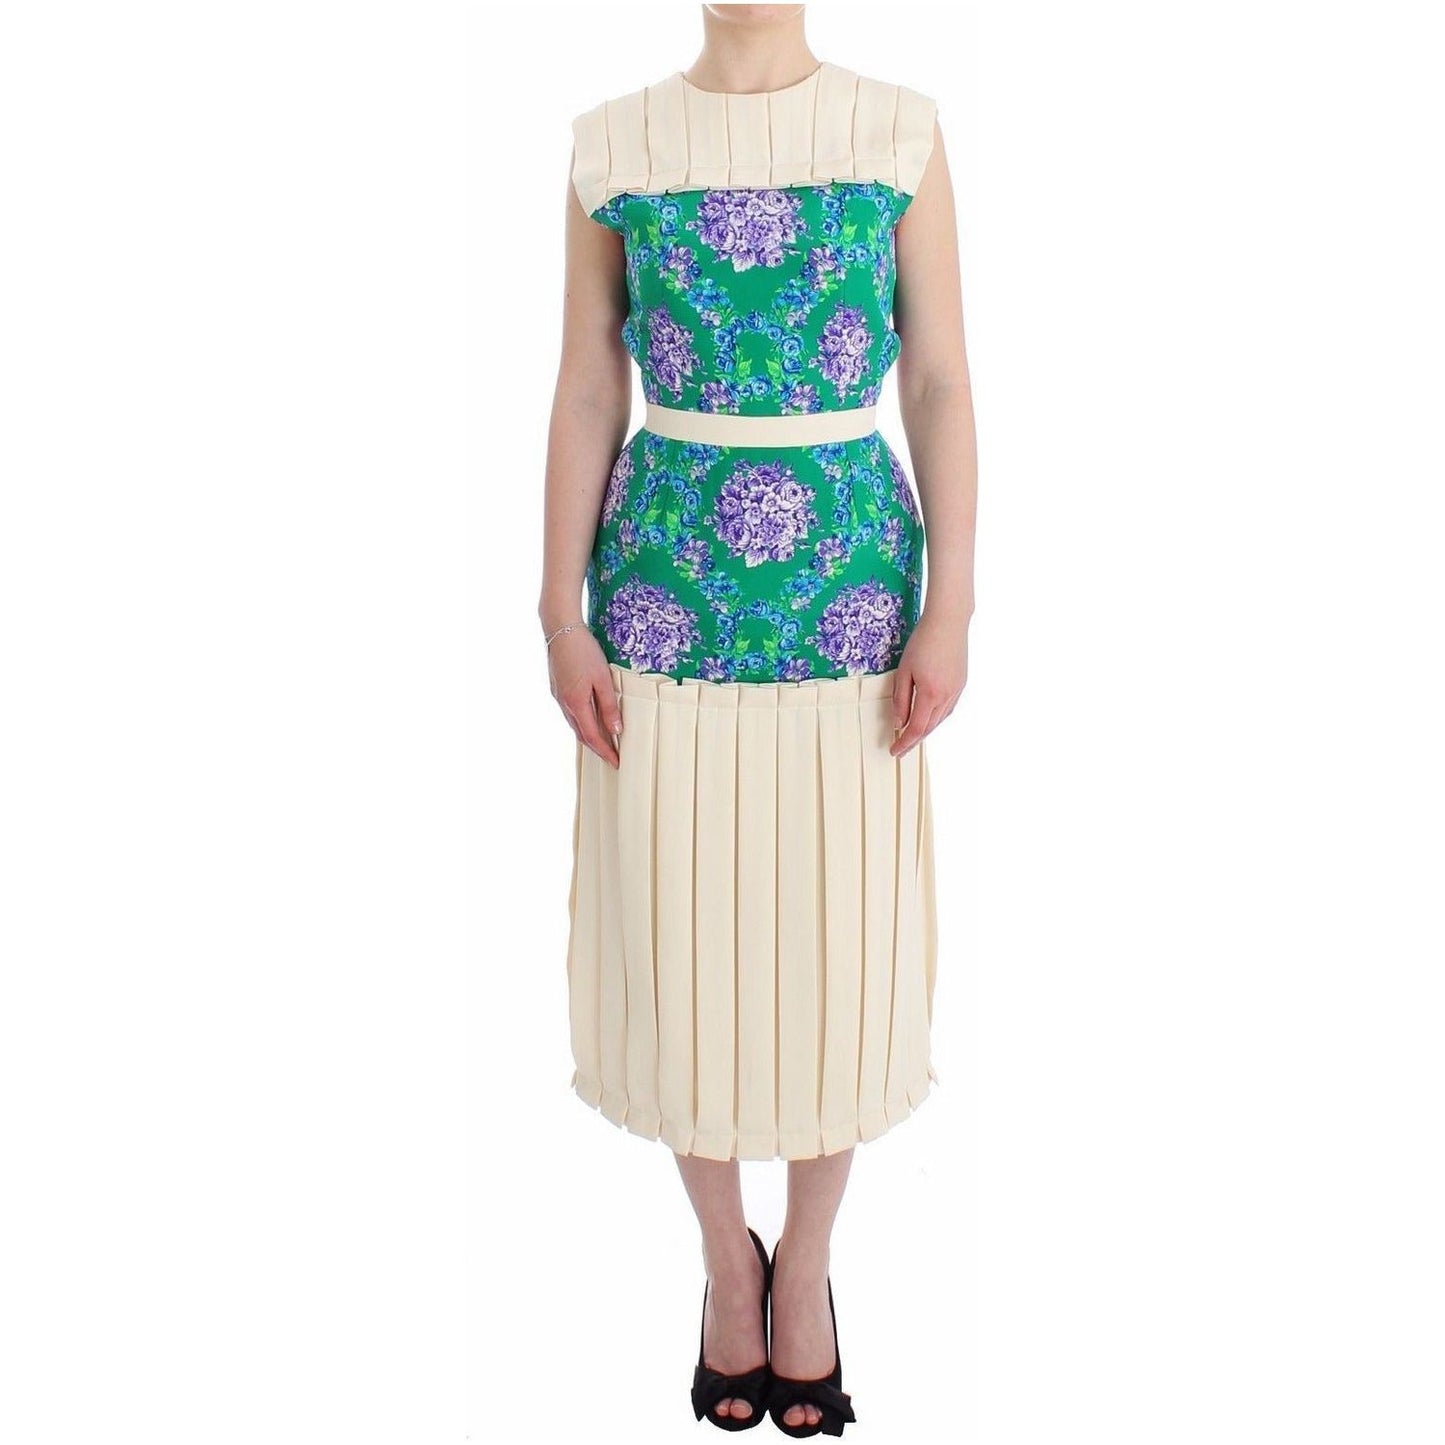 Caterina Gatta Chic Artisan Sleeveless Multicolor Dress WOMAN DRESSES multicolor-dress-gown-floral-sleeveless-gown